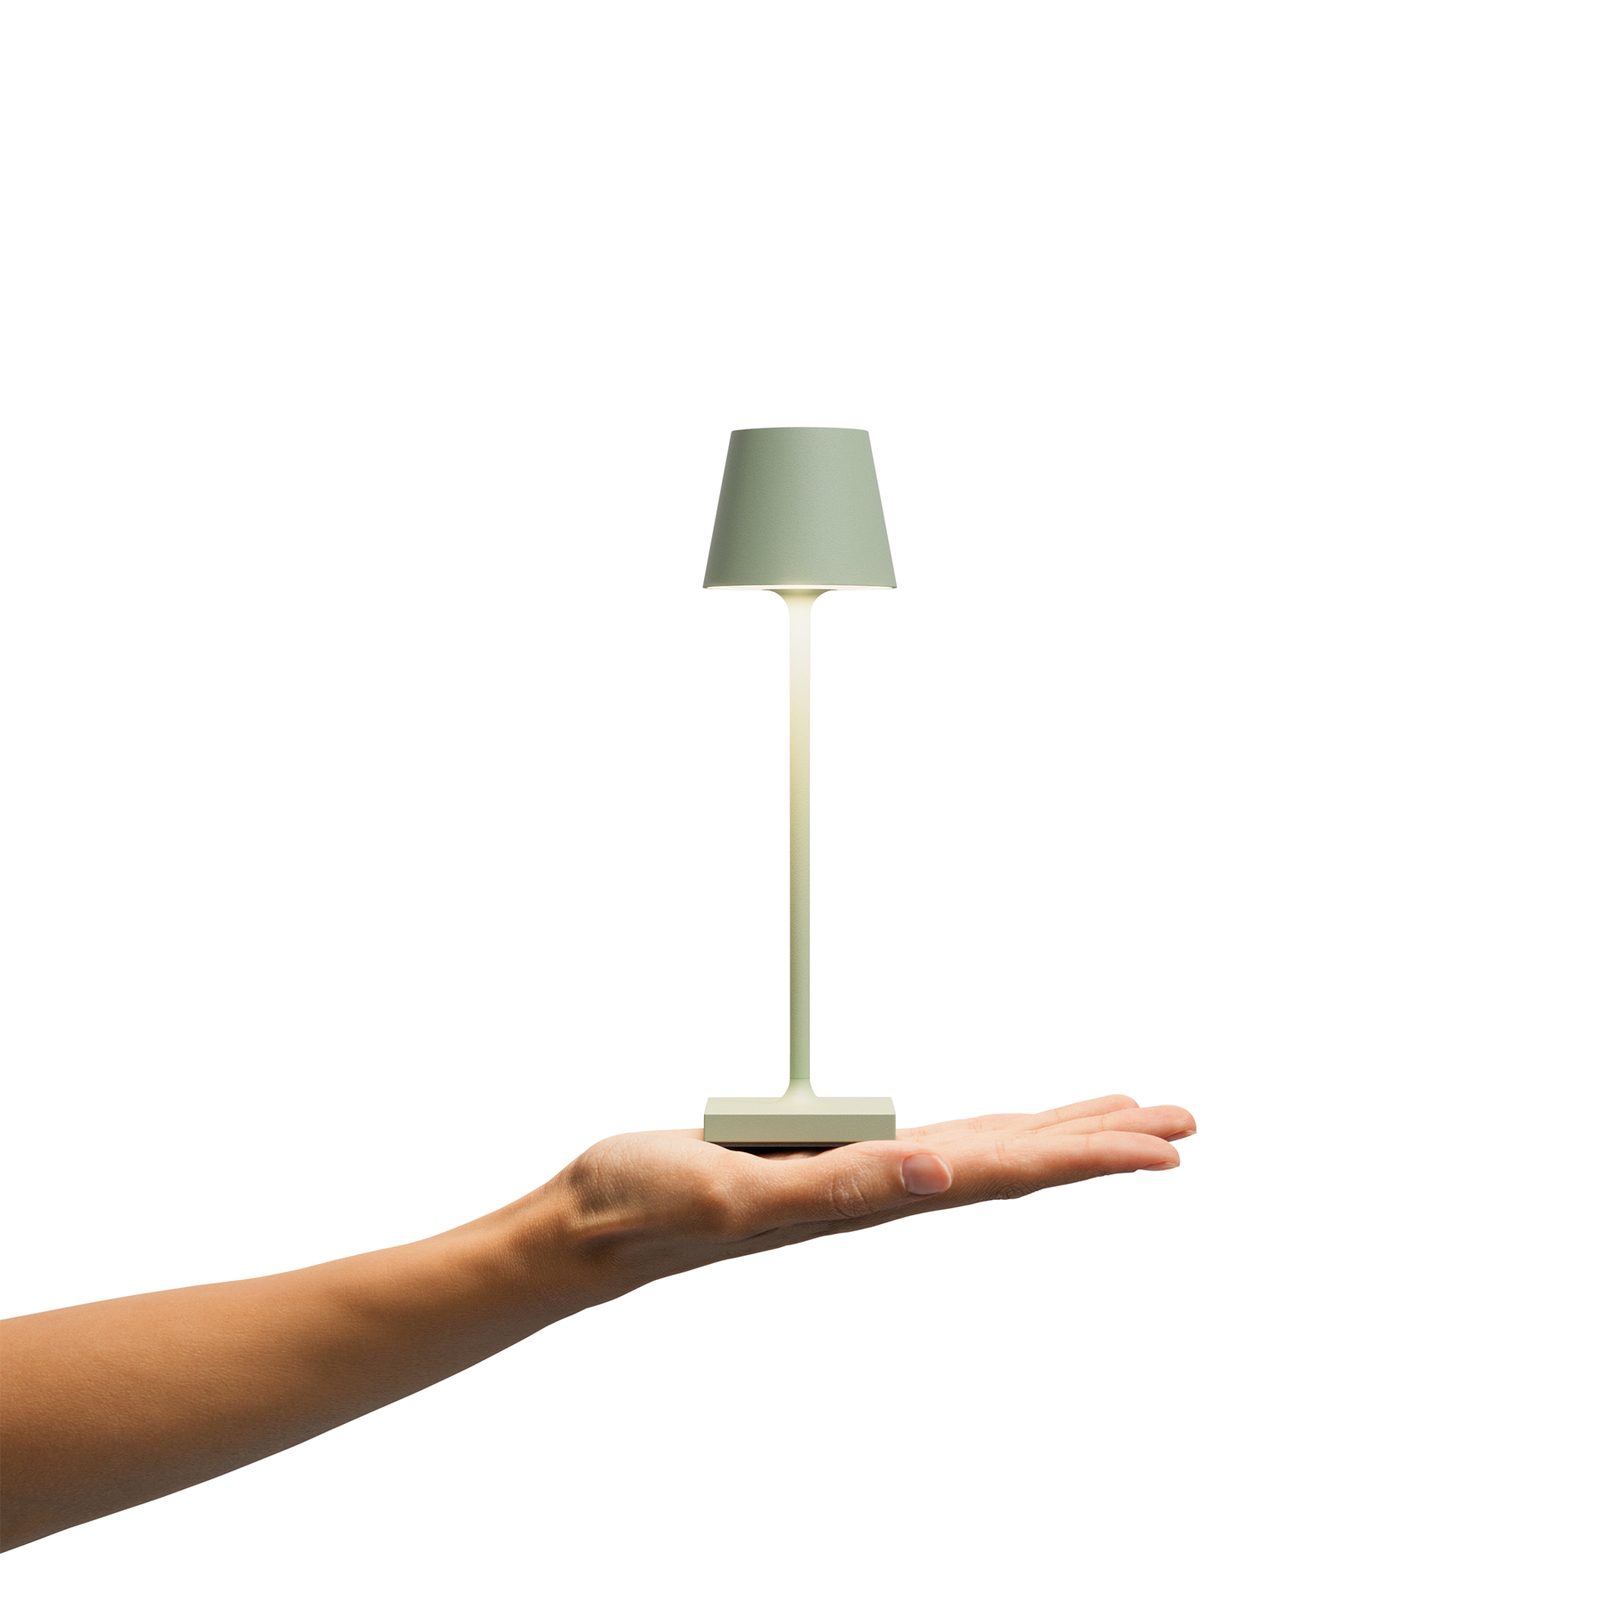 Nuindie vrecková LED dobíjacia stolová lampa, šalviovo zelená